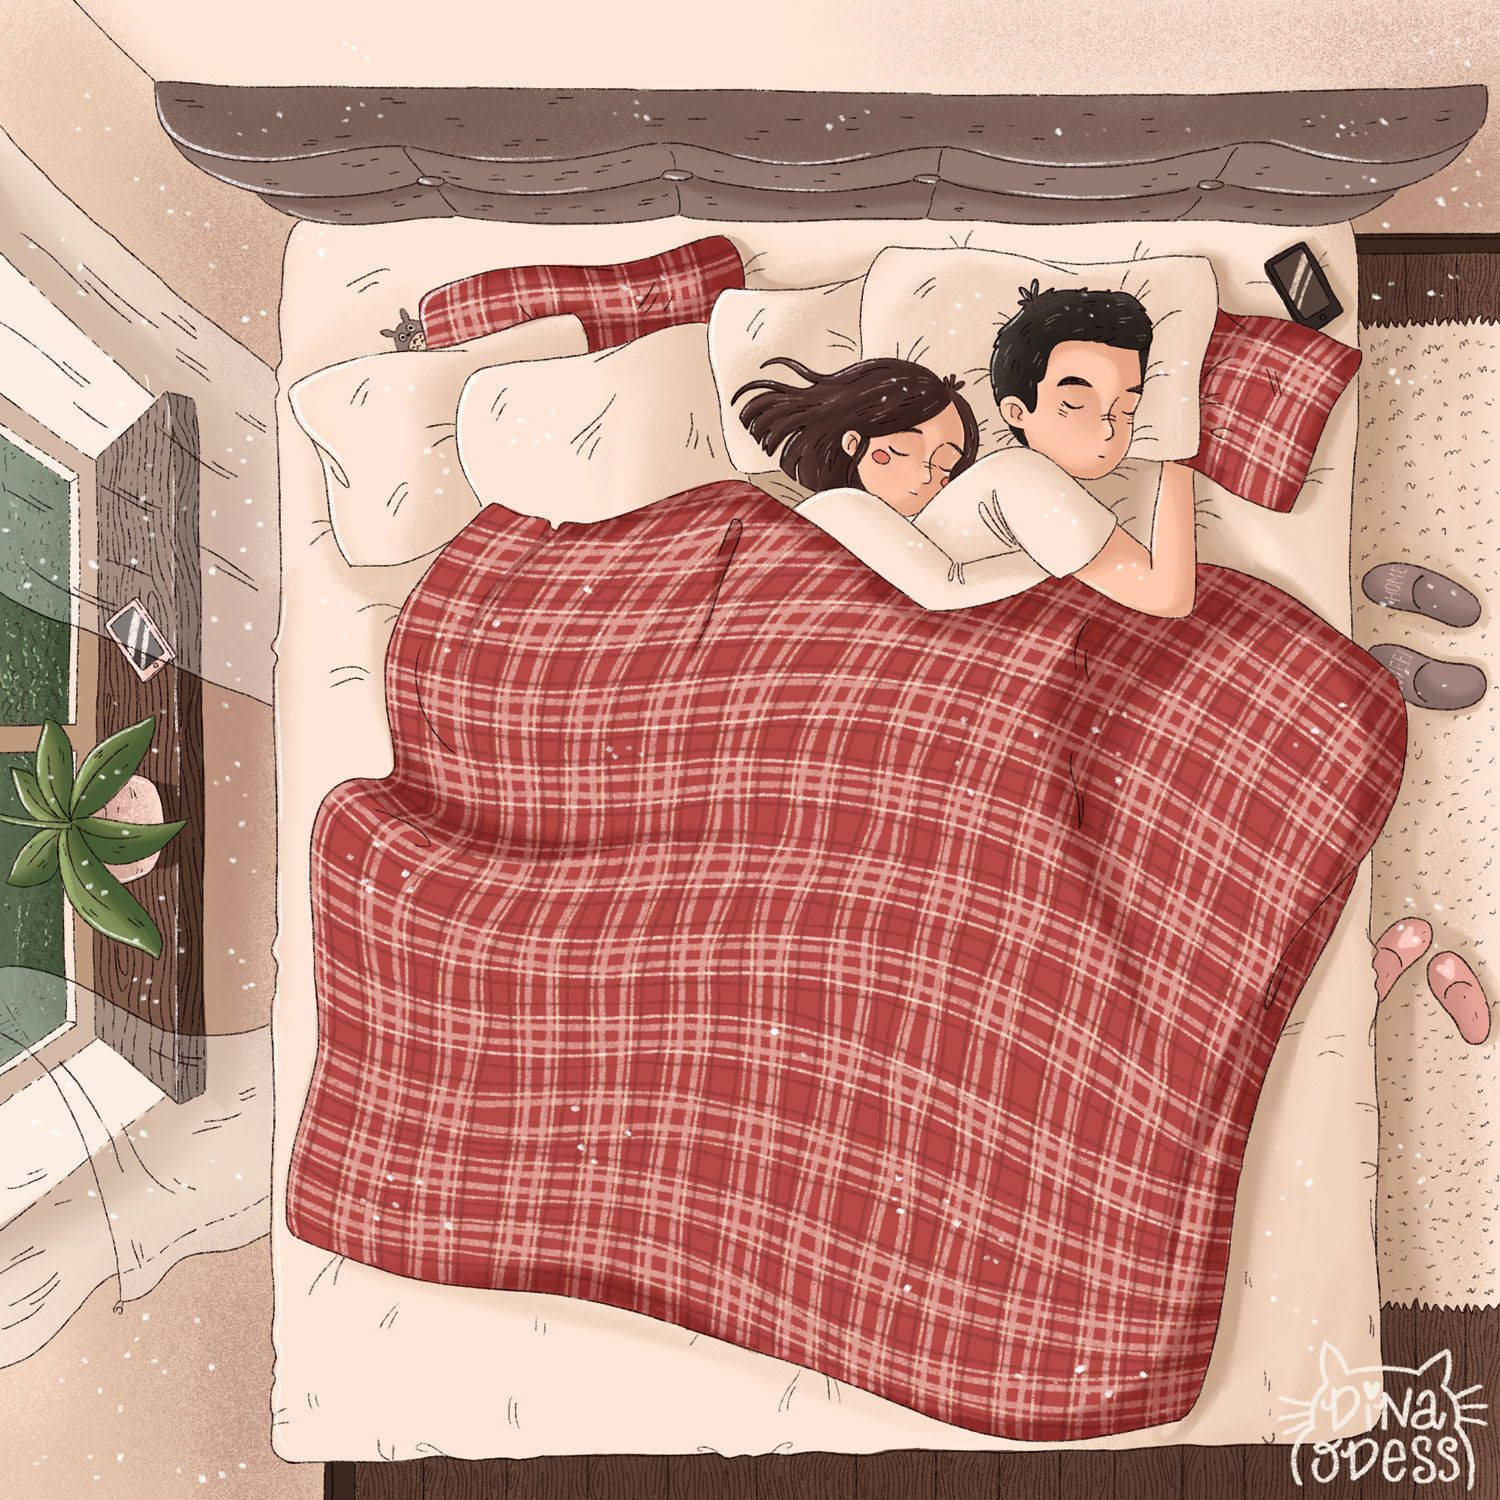 Anime Couple Sleeping Wallpapers